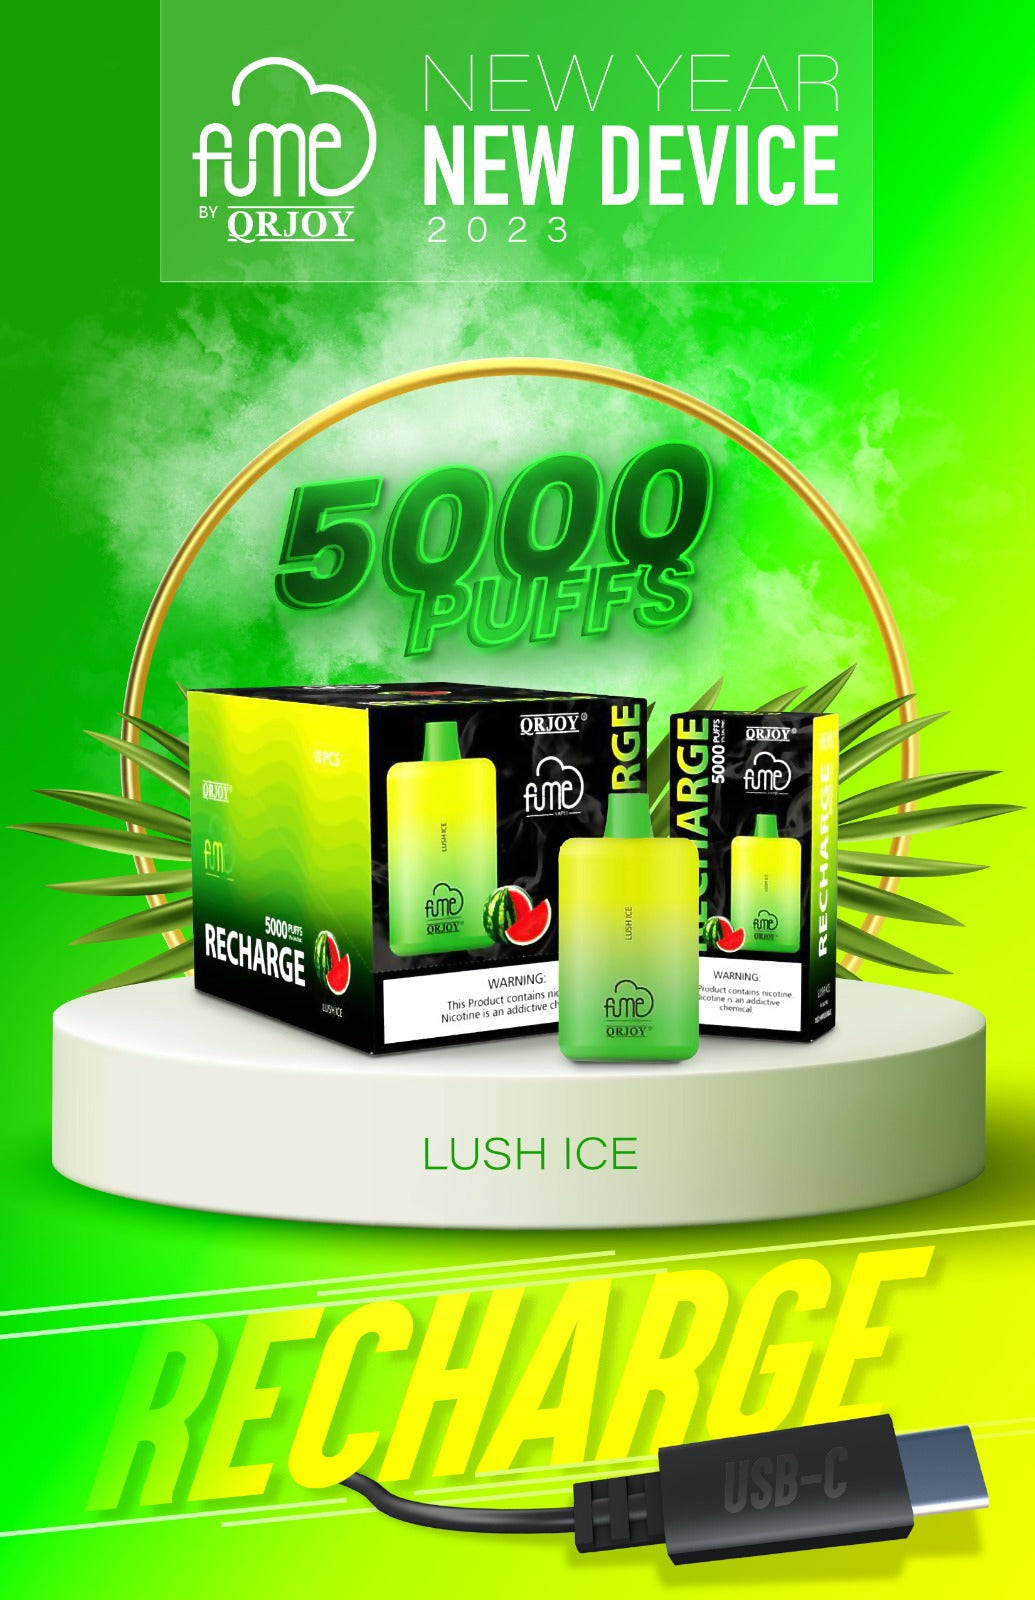 Fume Recharge 5000 Puffs Disposable Vape Wholesale - 1 Box / 10pcs ...